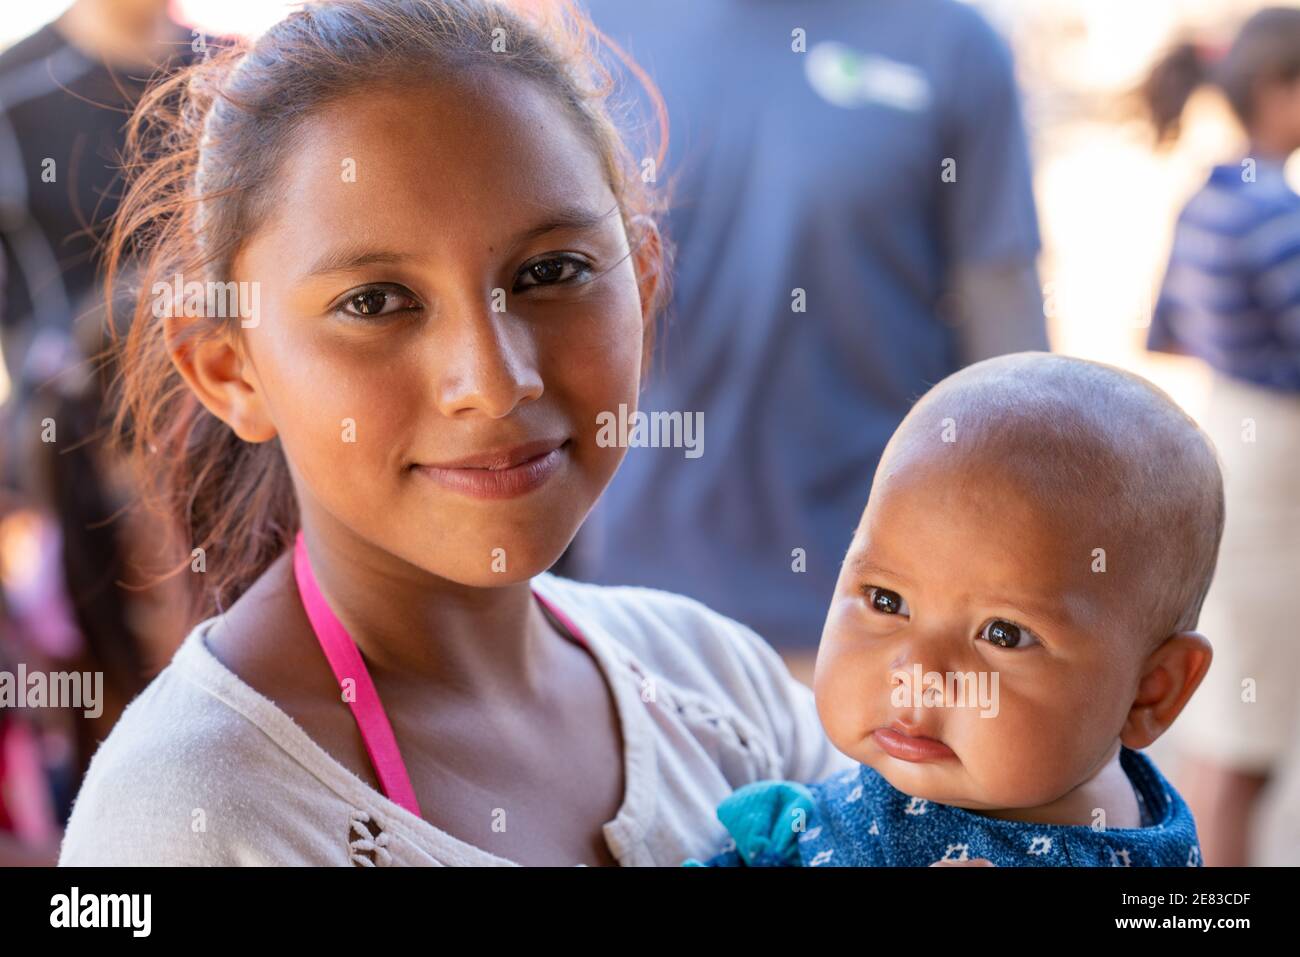 Jeune fille d'Amérique centrale dans le pays du tiers monde - pauvreté Banque D'Images